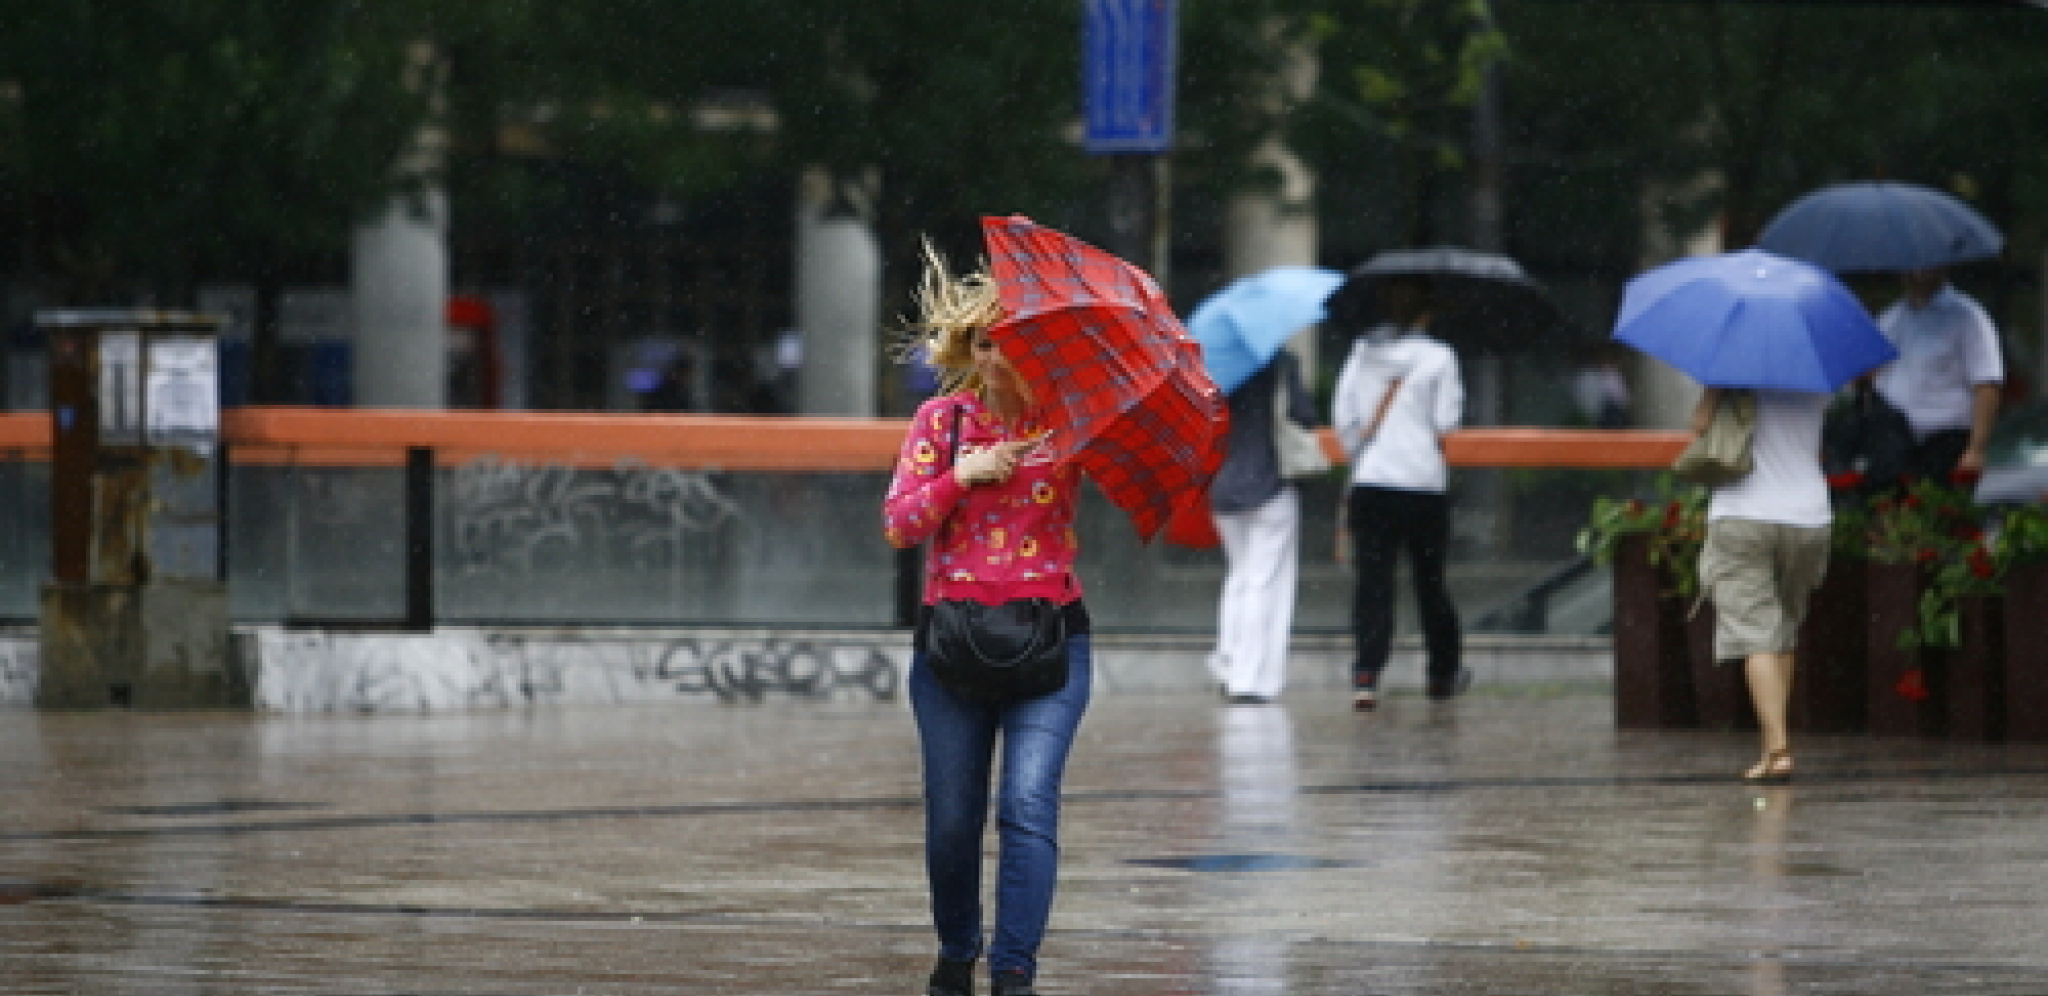 SPREMITE SE ZA GRMLJAVINSKE PLJUSKOVE Nema otopljenja do ovog datuma, ciklon donosi nevreme u Srbiju